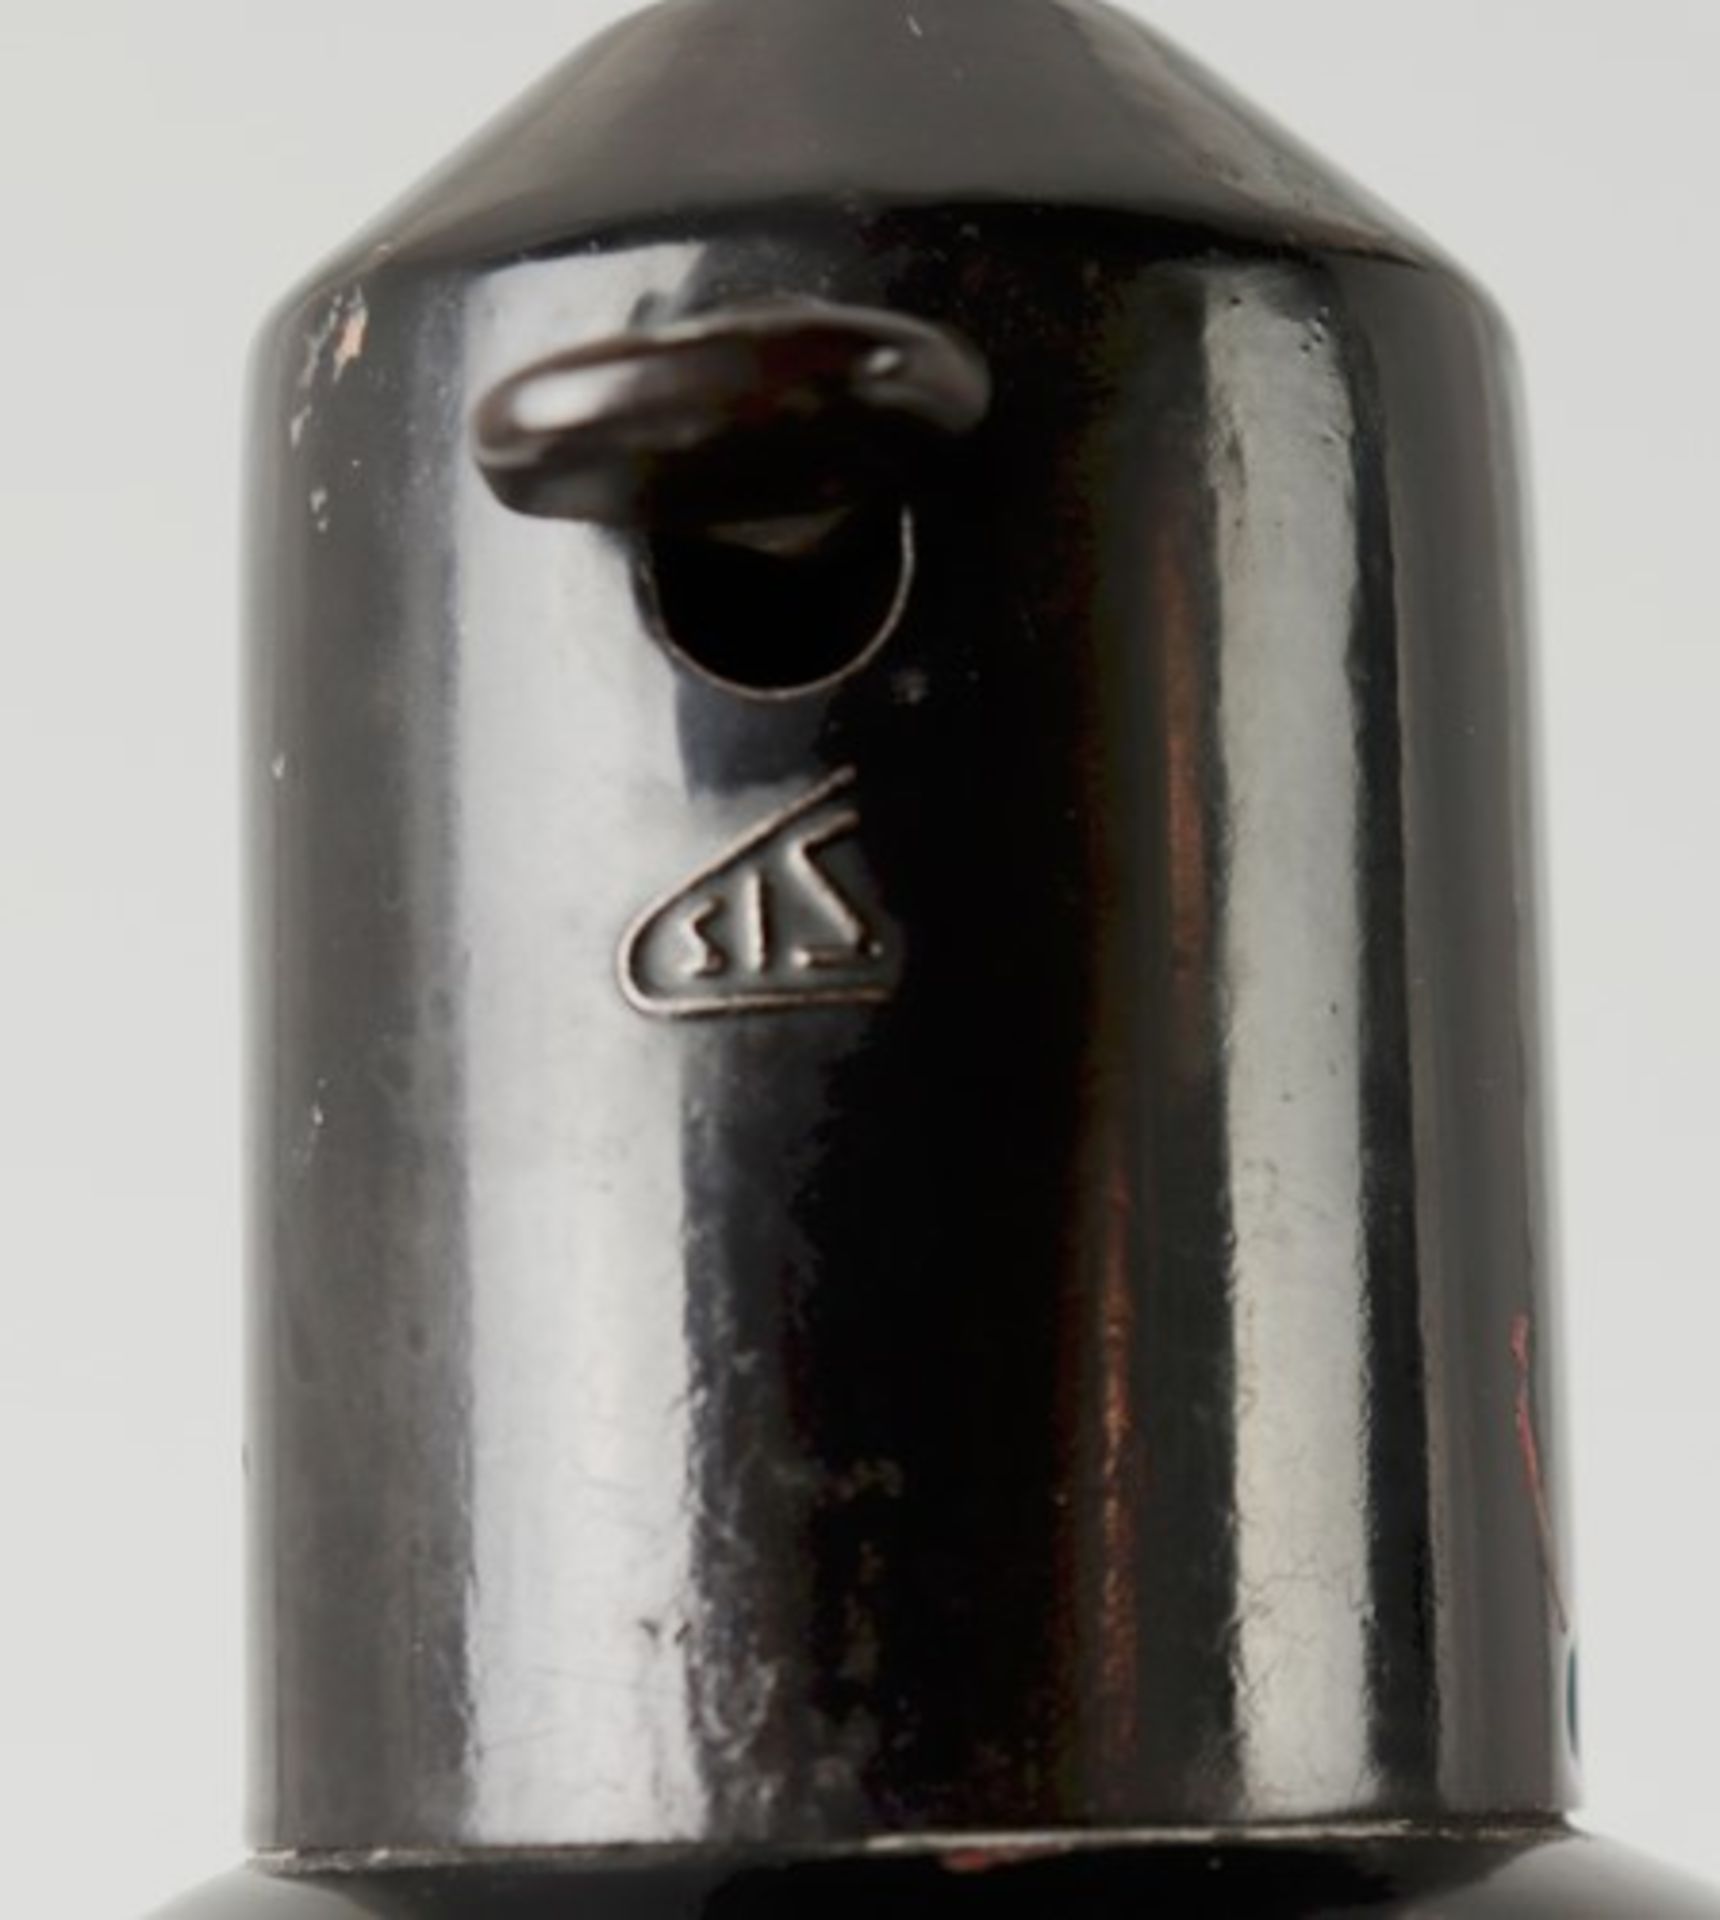 Tischlampe - Art-décoim Schirm bez., Prägemarke SIS, um 1920, Werkstattlampe/Gelenklampe - Bild 5 aus 6